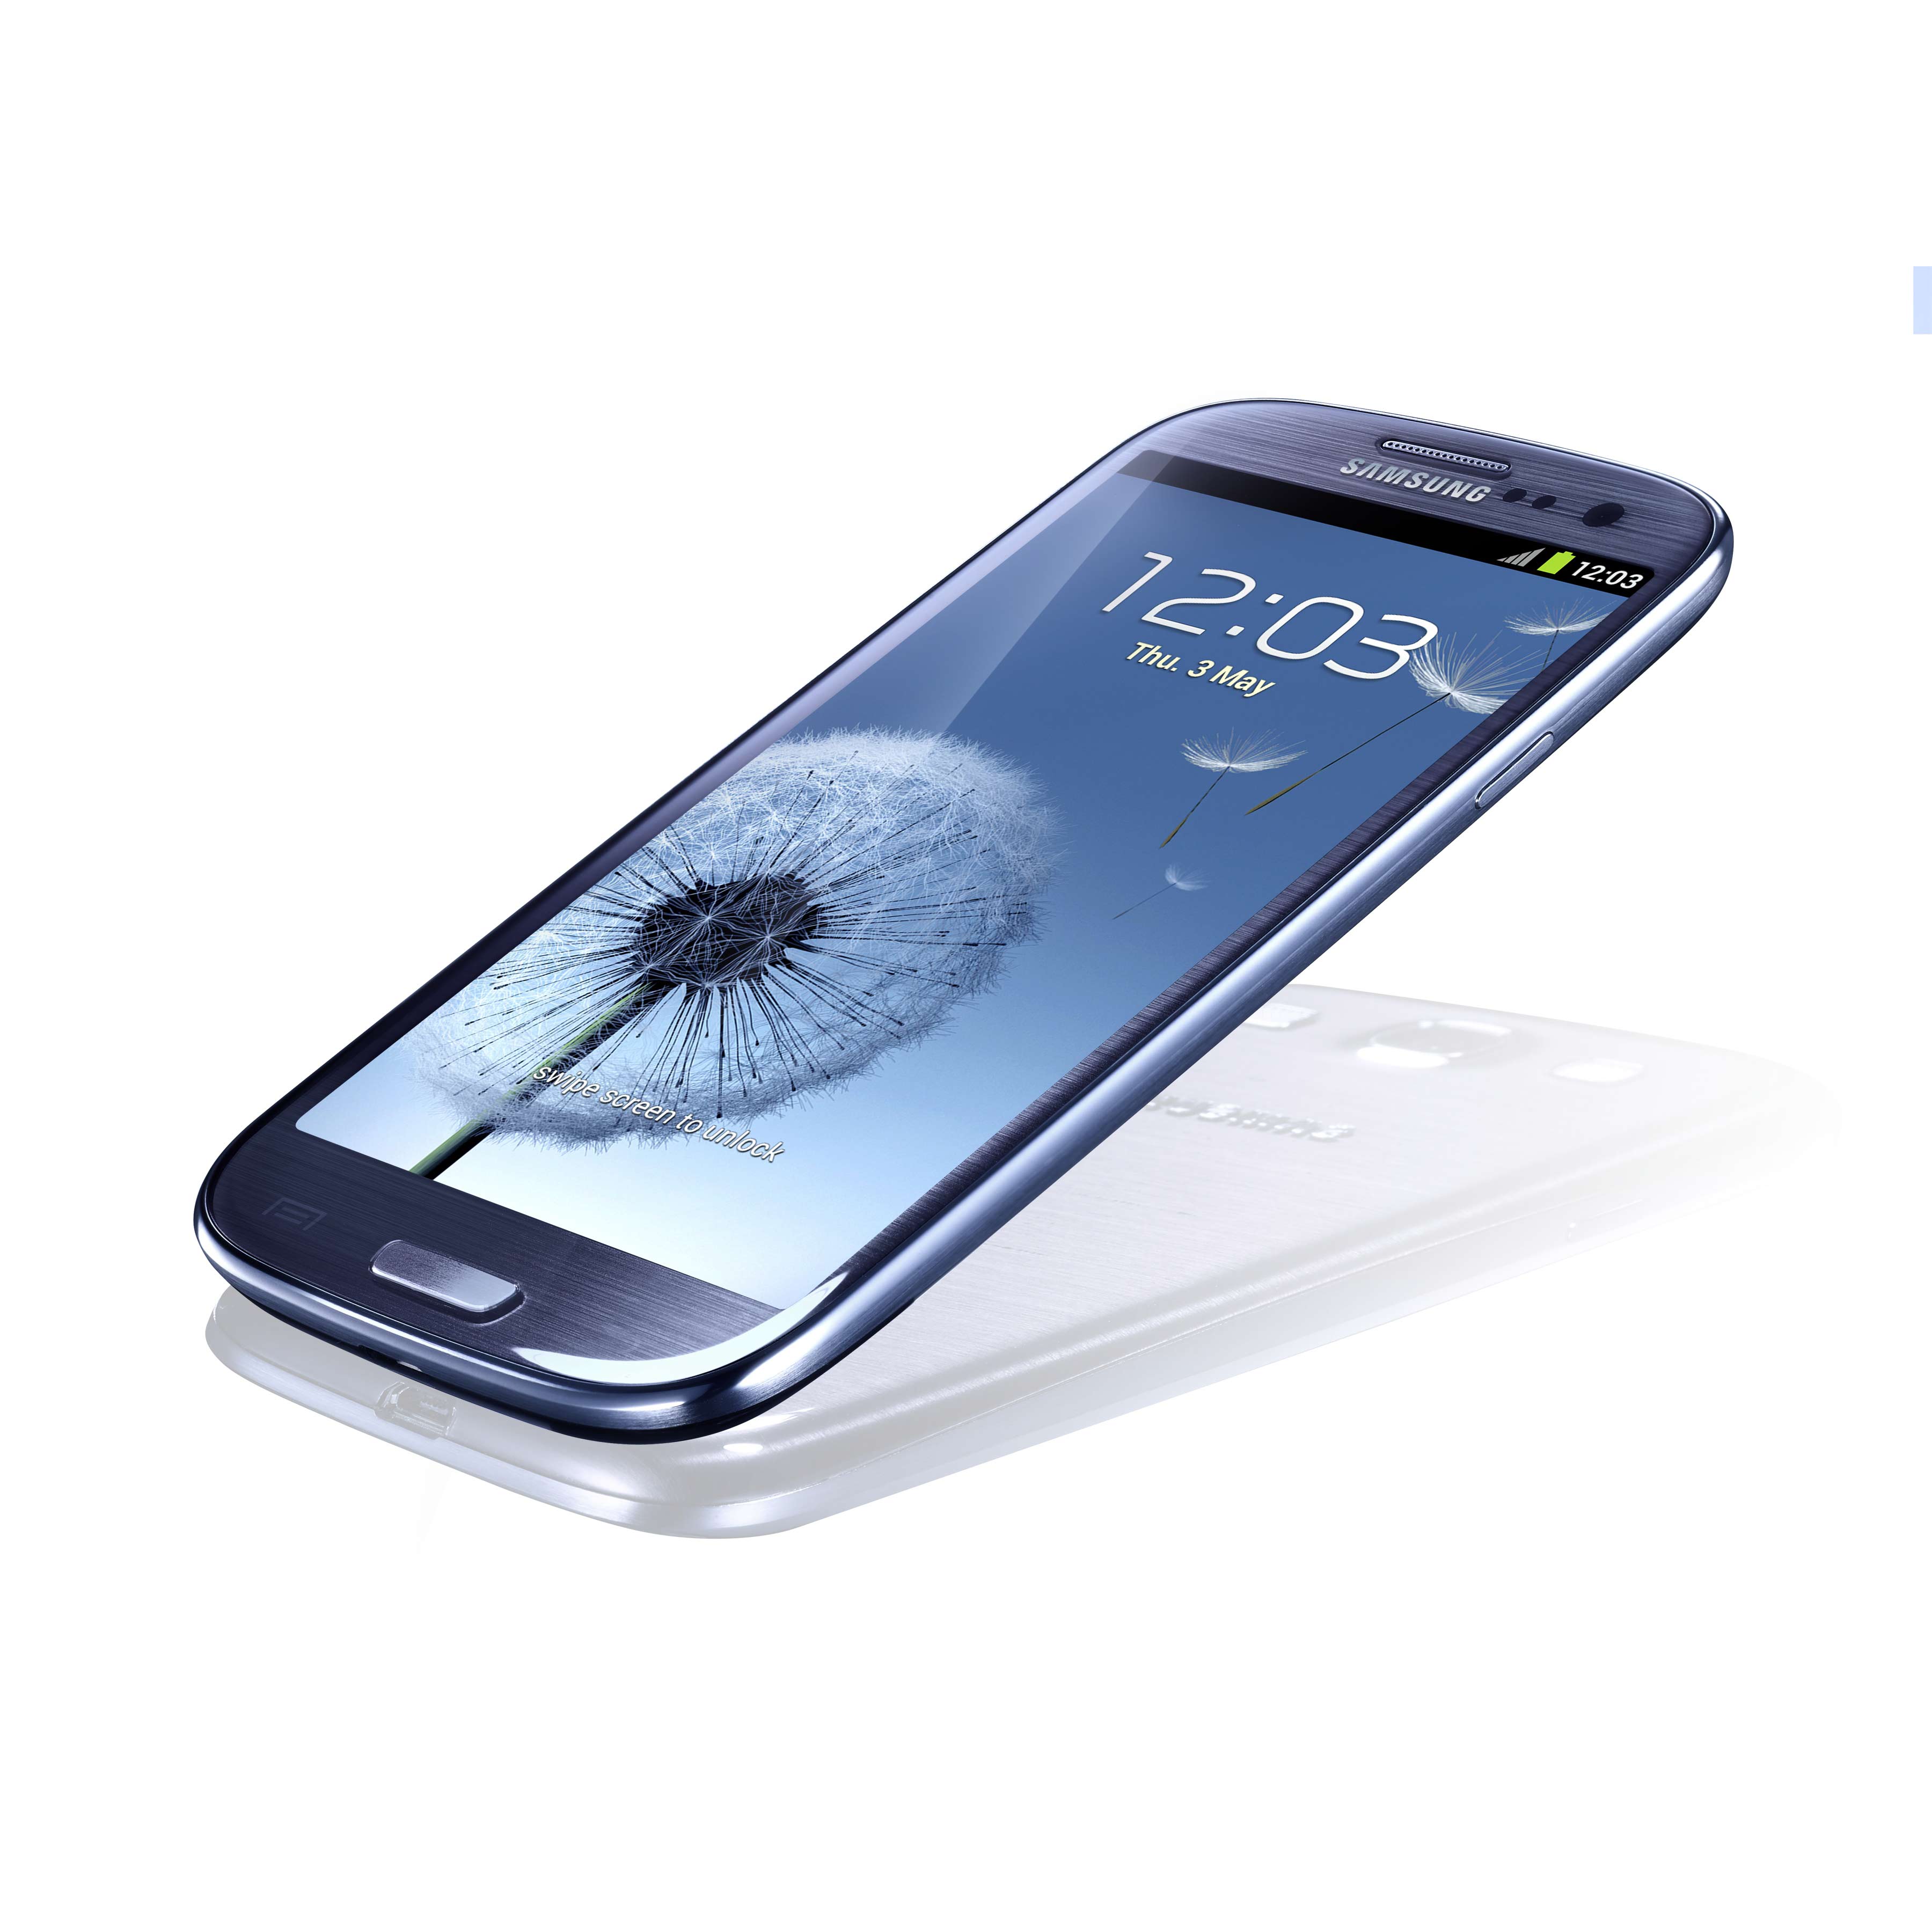 Купить самсунг телефон цены недорого. Samsung Galaxy s III gt-i9300 16gb. I9300 Galaxy s III 16gb Samsung. Samsung Galaxy s3 Neo. Смартфон Samsung Galaxy s III 4g gt-i9305.